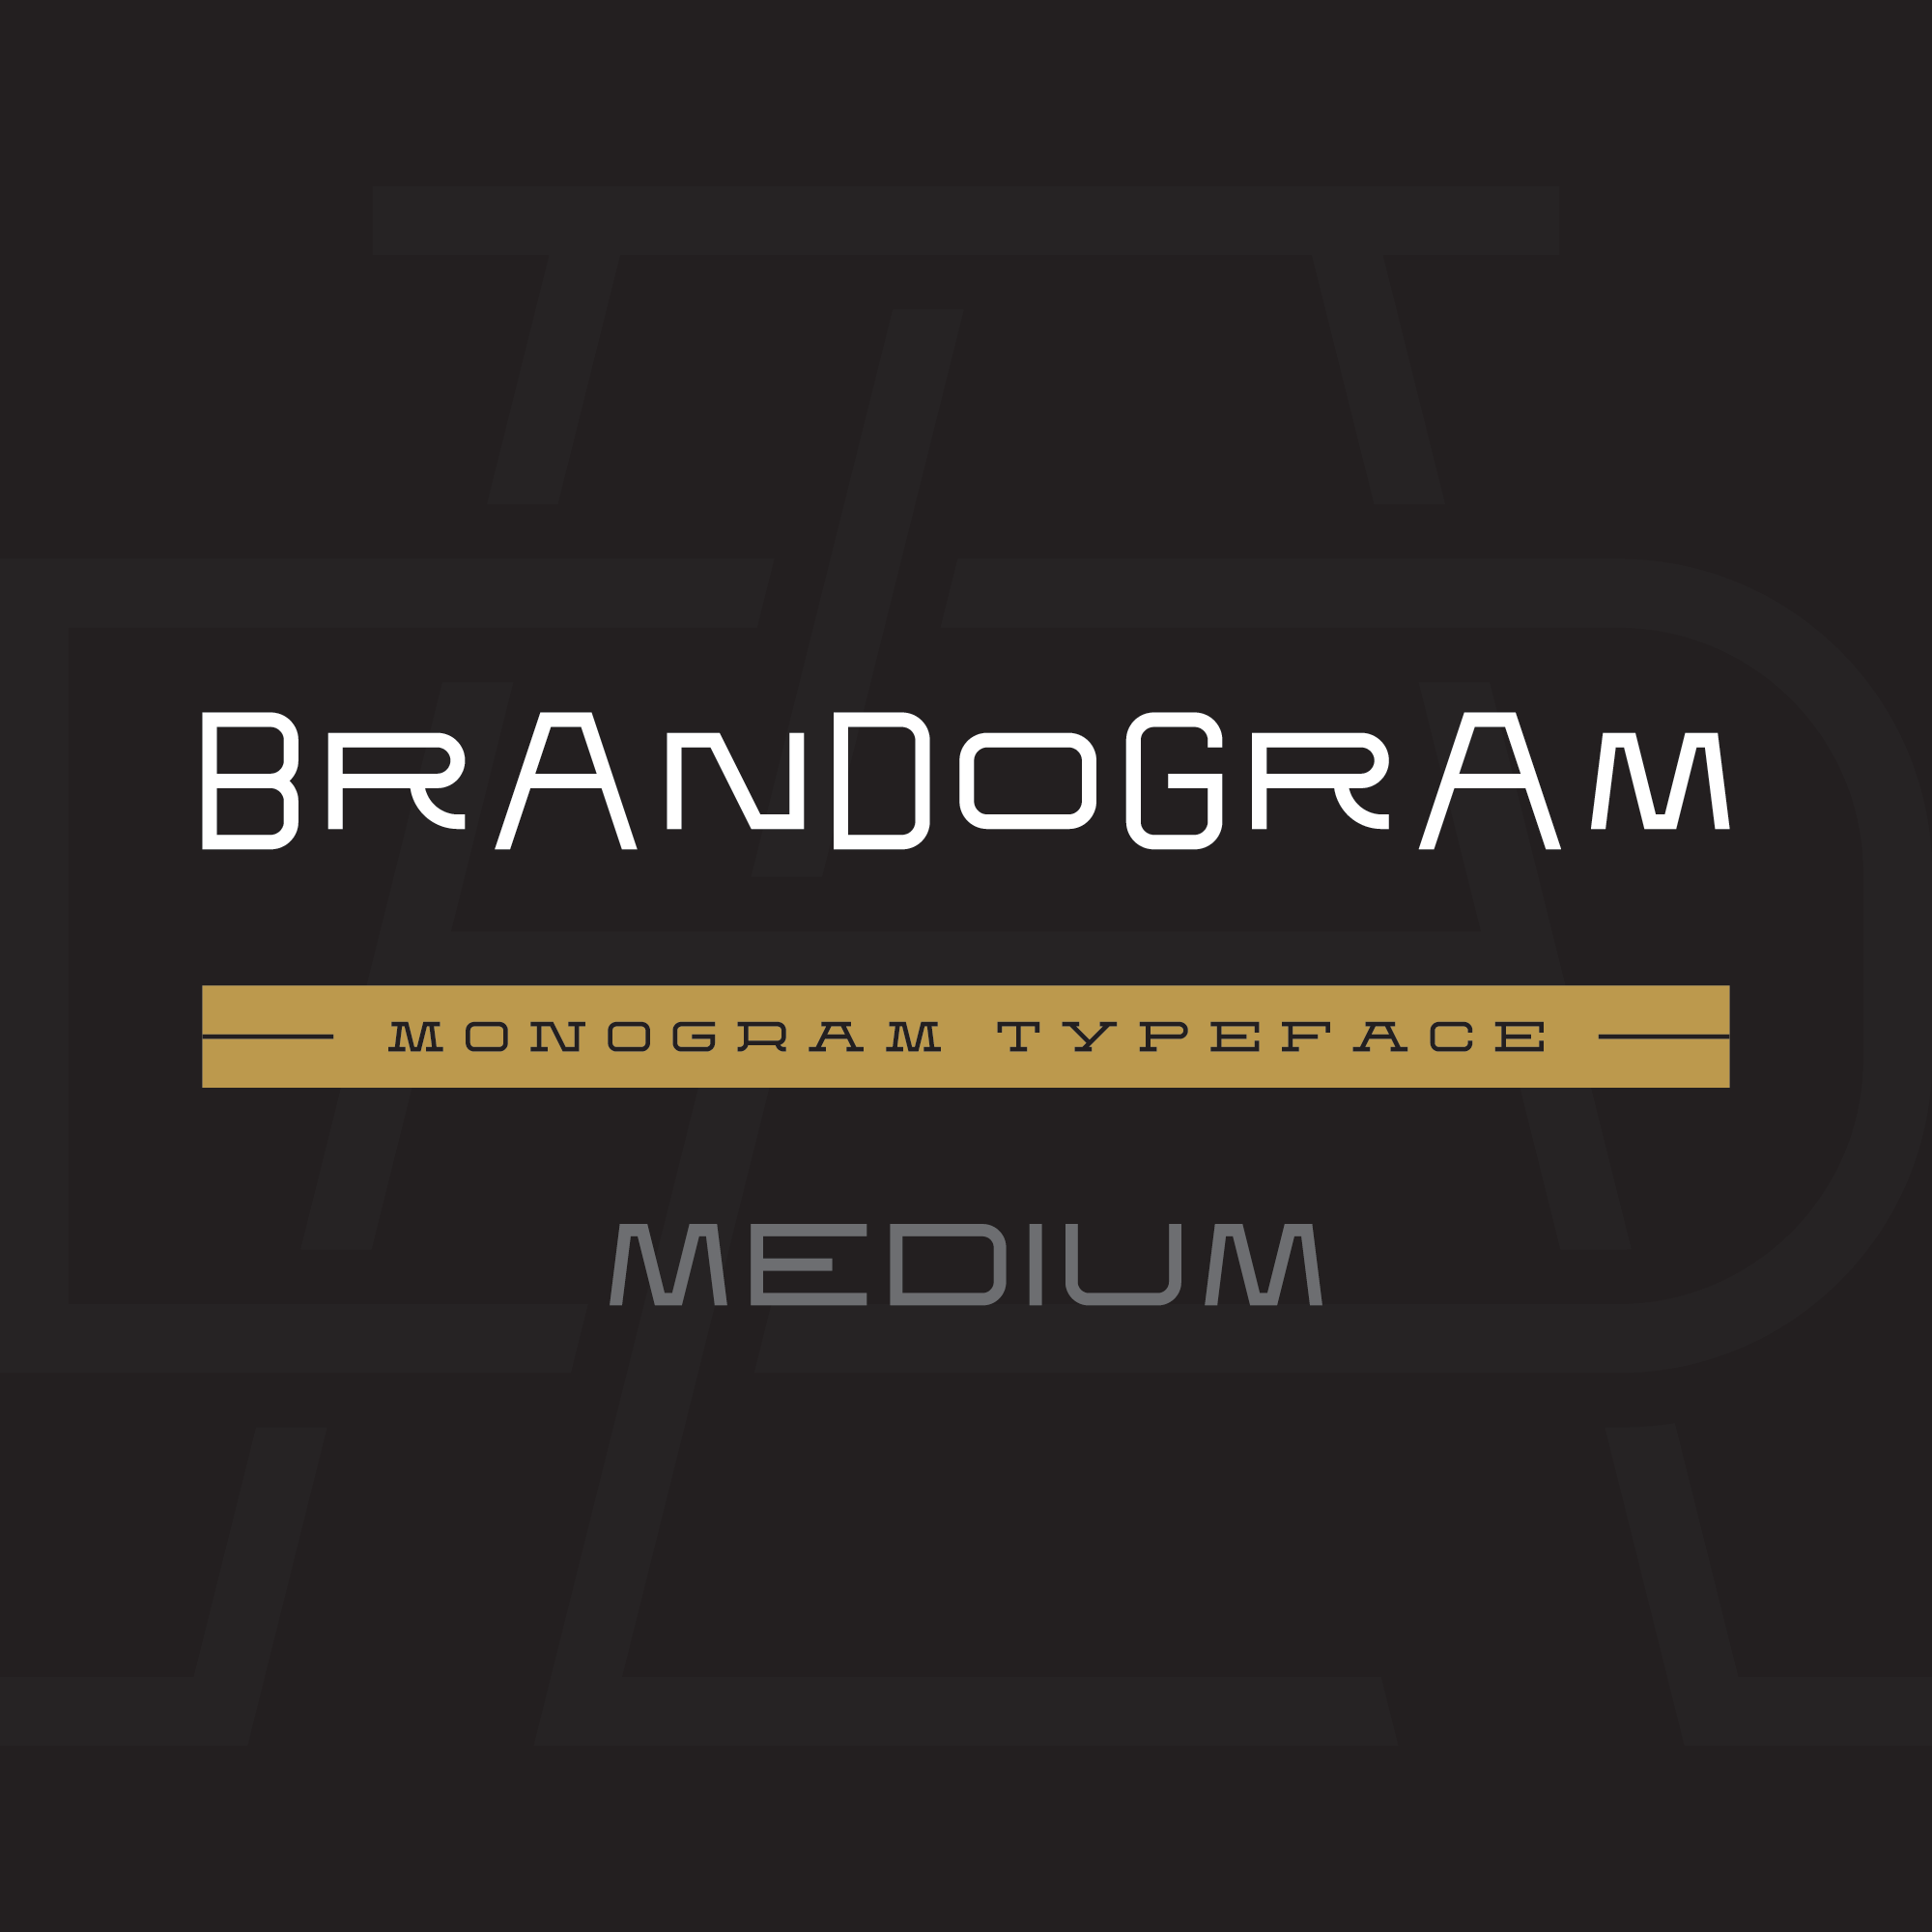 brandogram-monogram-typeface-medium-cover-instagram-png